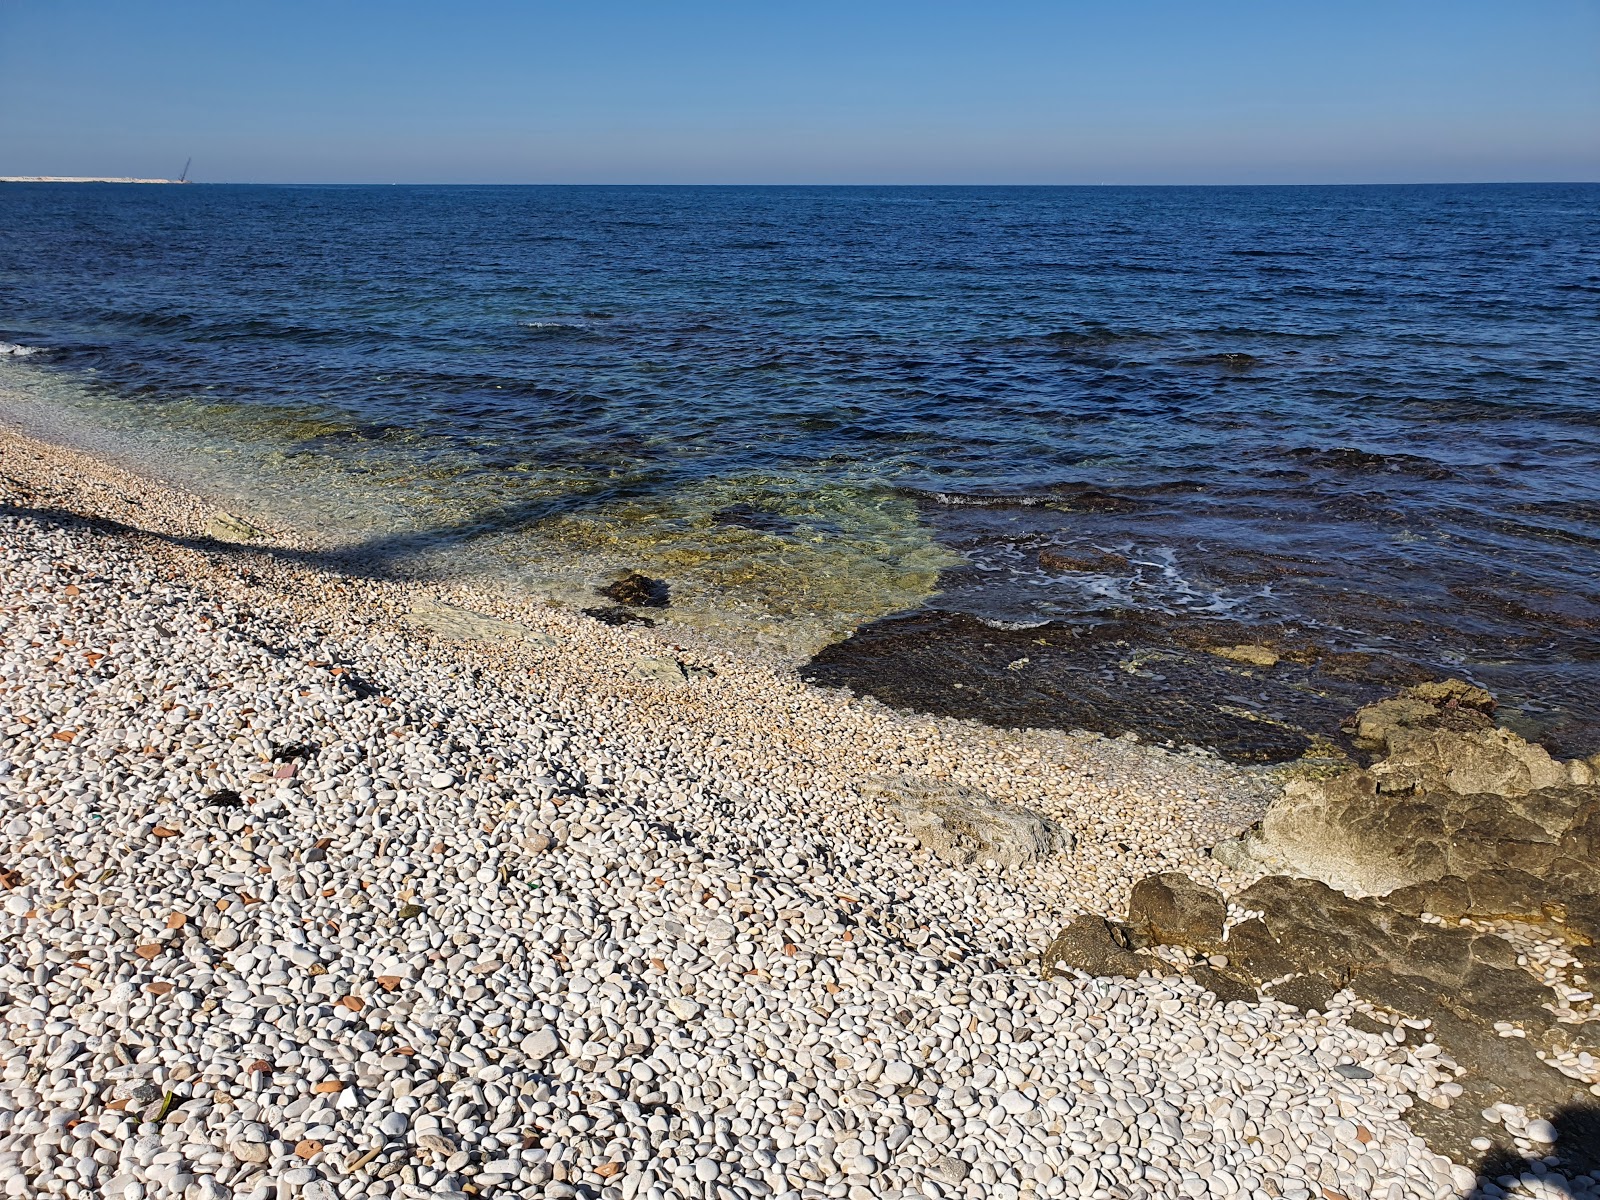 Zdjęcie First Cala beach z powierzchnią niebieska czysta woda